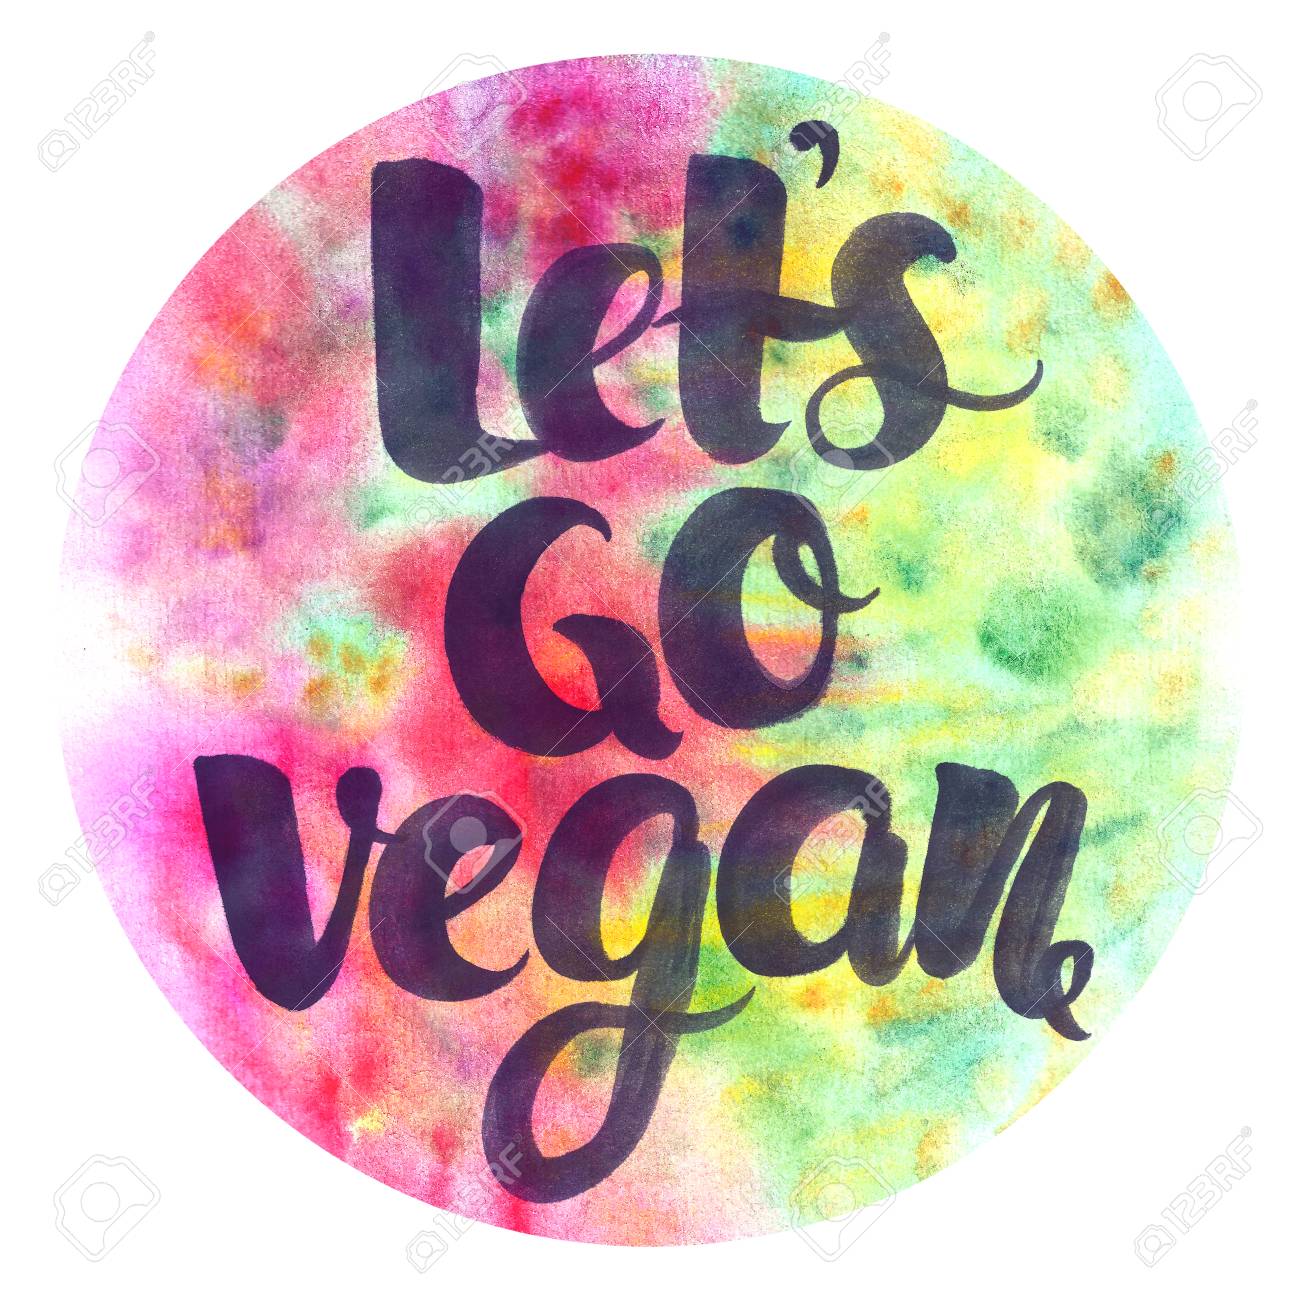 lets_go_vegan.jpg